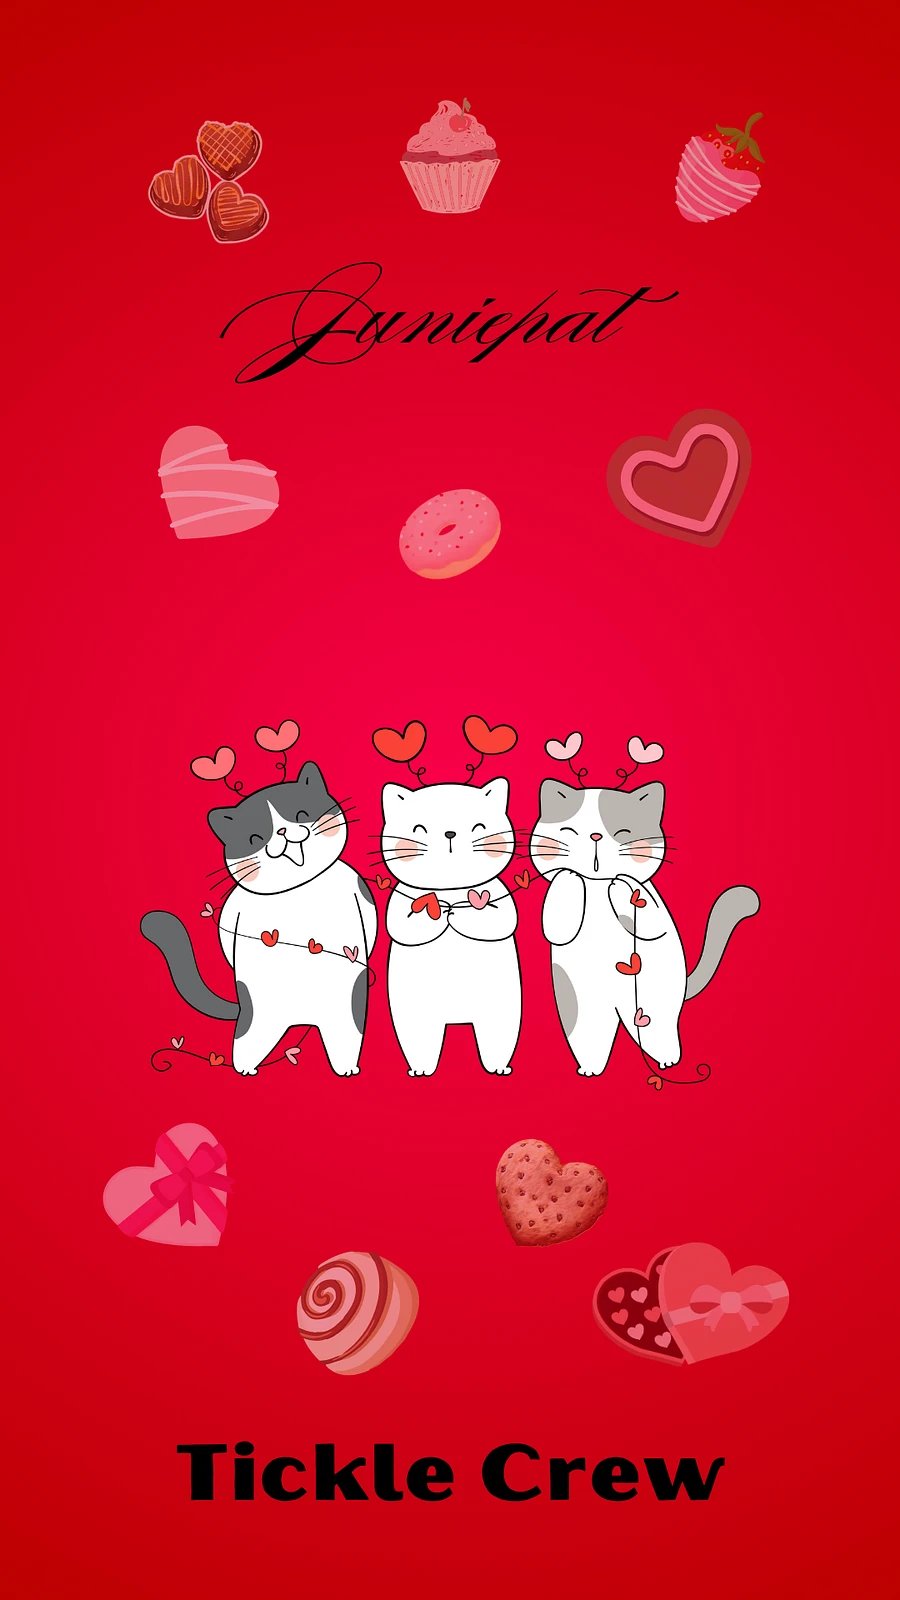 Juniepat Love & Laughter Phone Wallpaper product image (1)